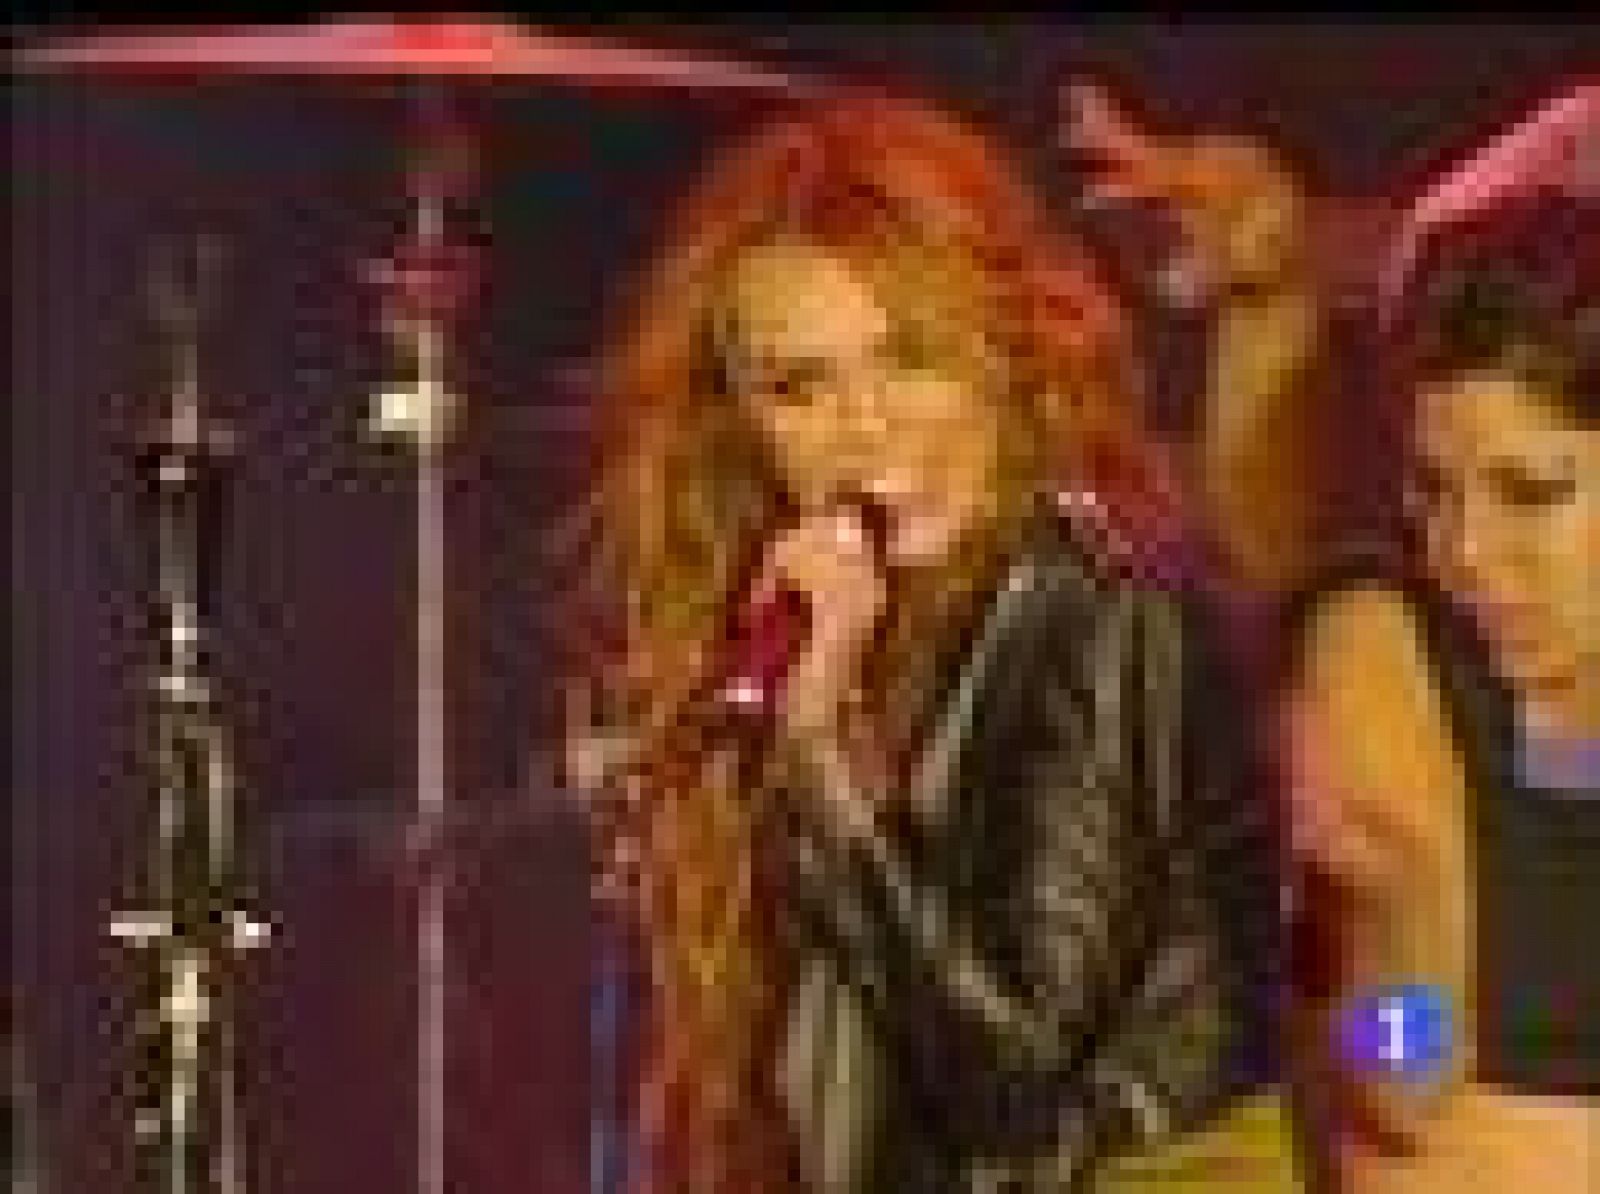 Amy Macdonald y Miley Cyrus, entre otros artistas, participaron el sábado en la última jornada de Rock in Río Lisboa.